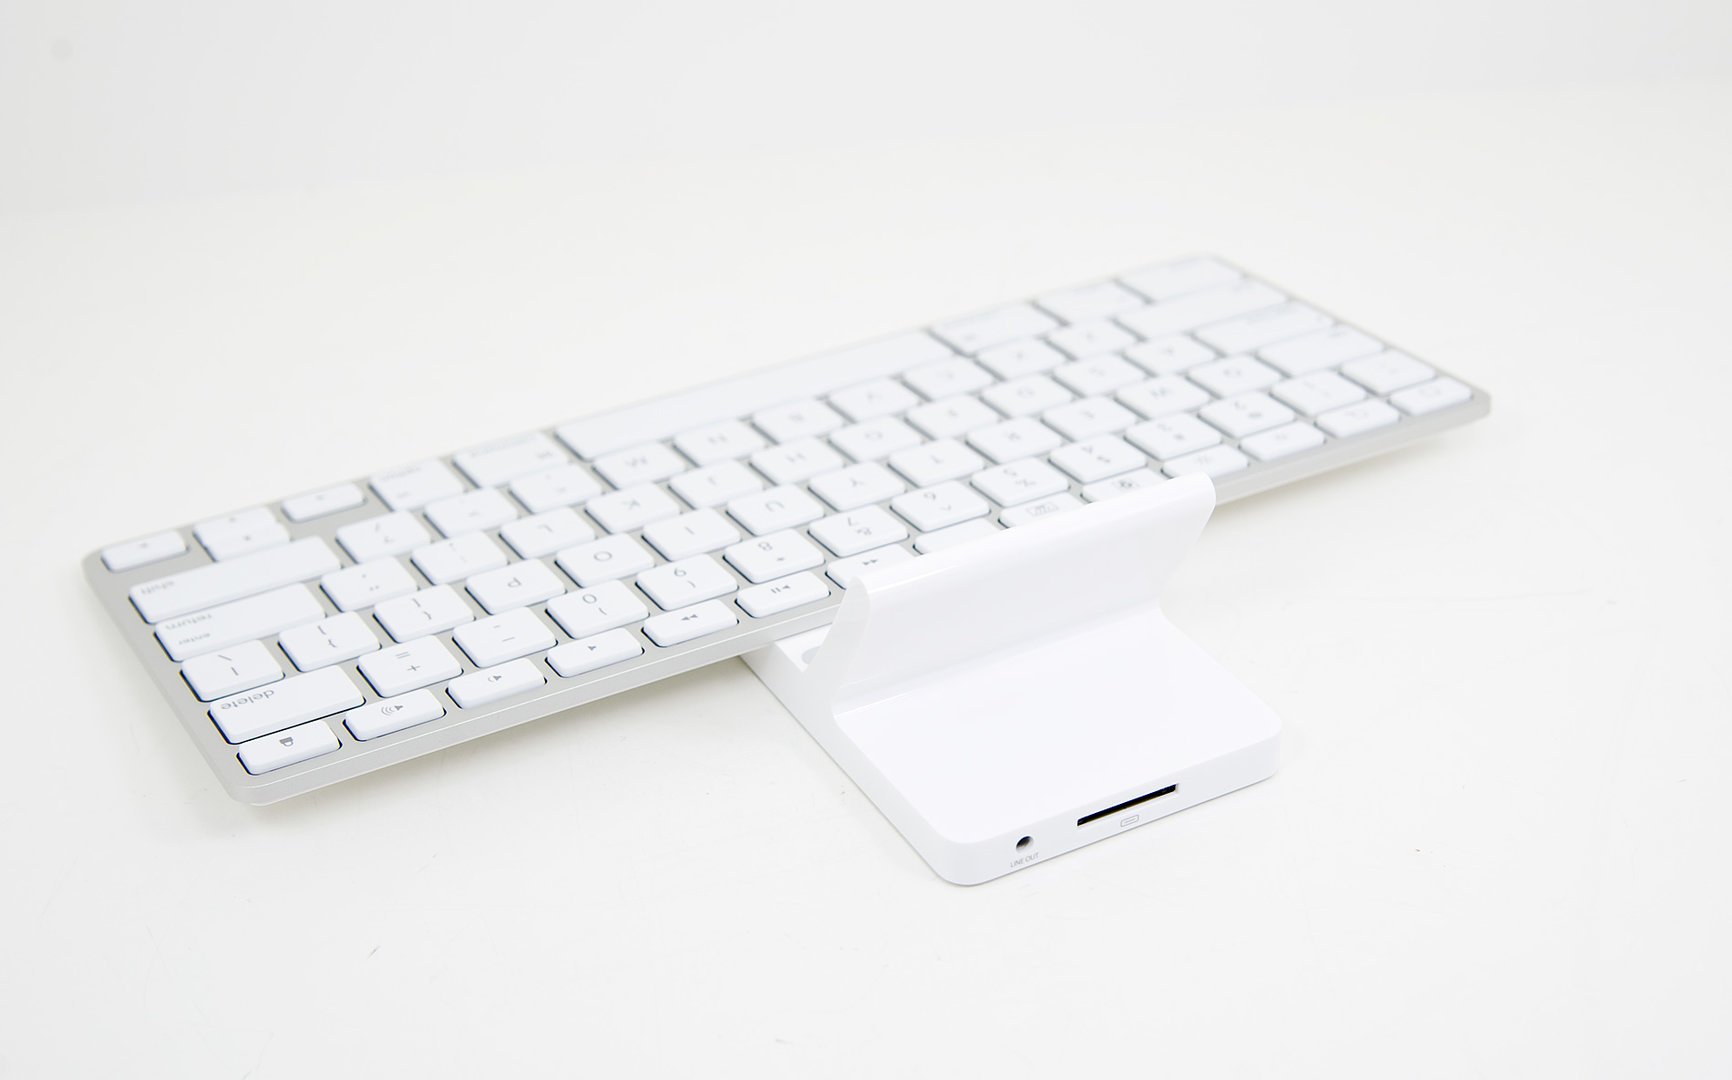 Apple iPad Keyboard Dock